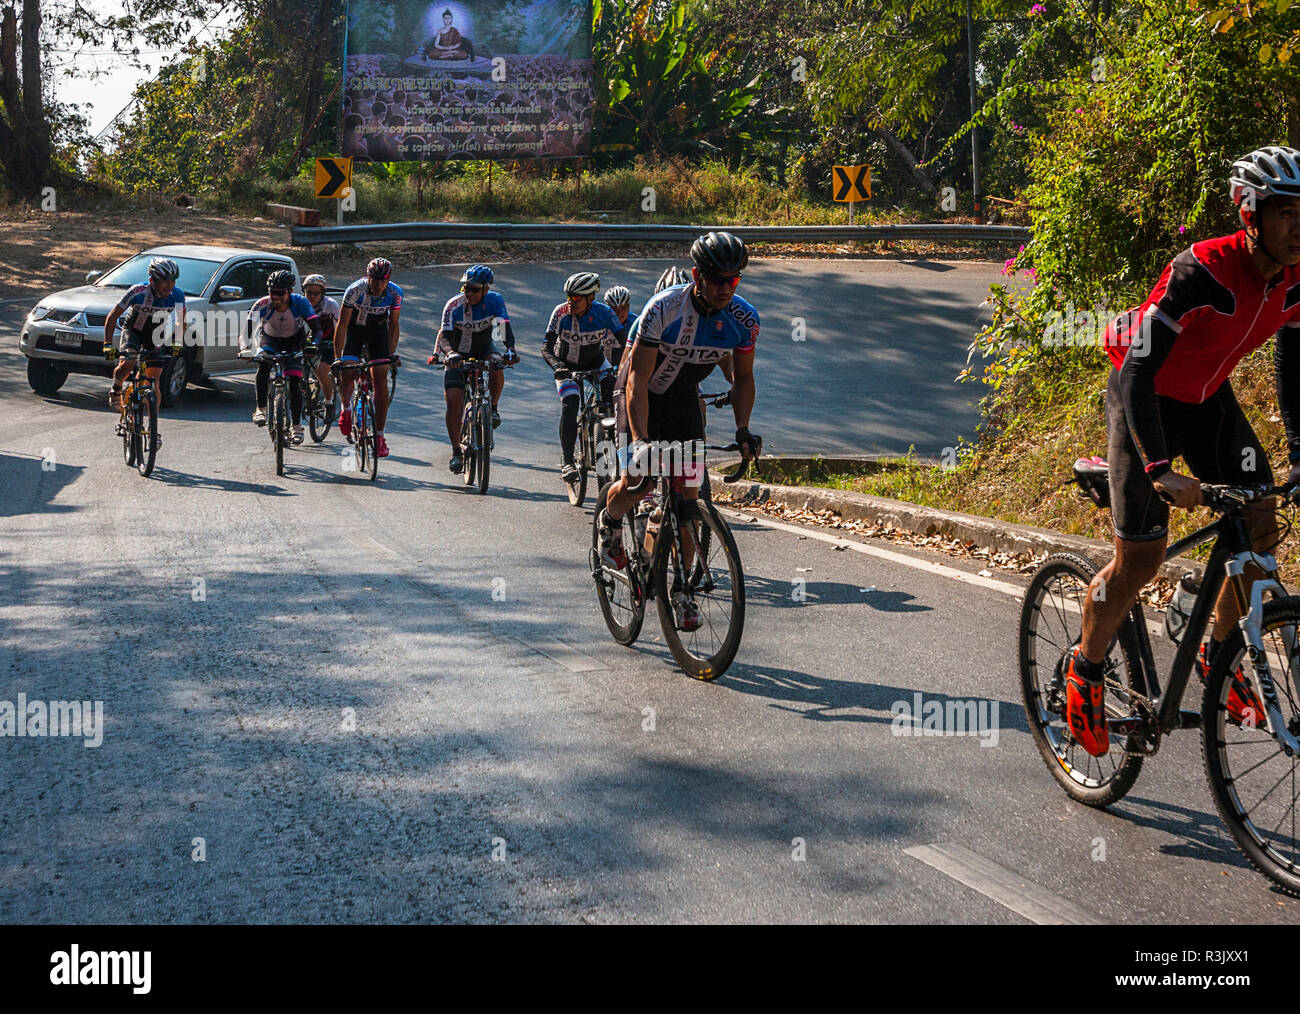 Febbraio 21, 2015, Autostrada a Doi Suthep, Chiang Mai, Thailandia. Editoriale: un gruppo di ciclisti salendo hil a Doi Suthep area sopra di Chiang Mai. Foto Stock